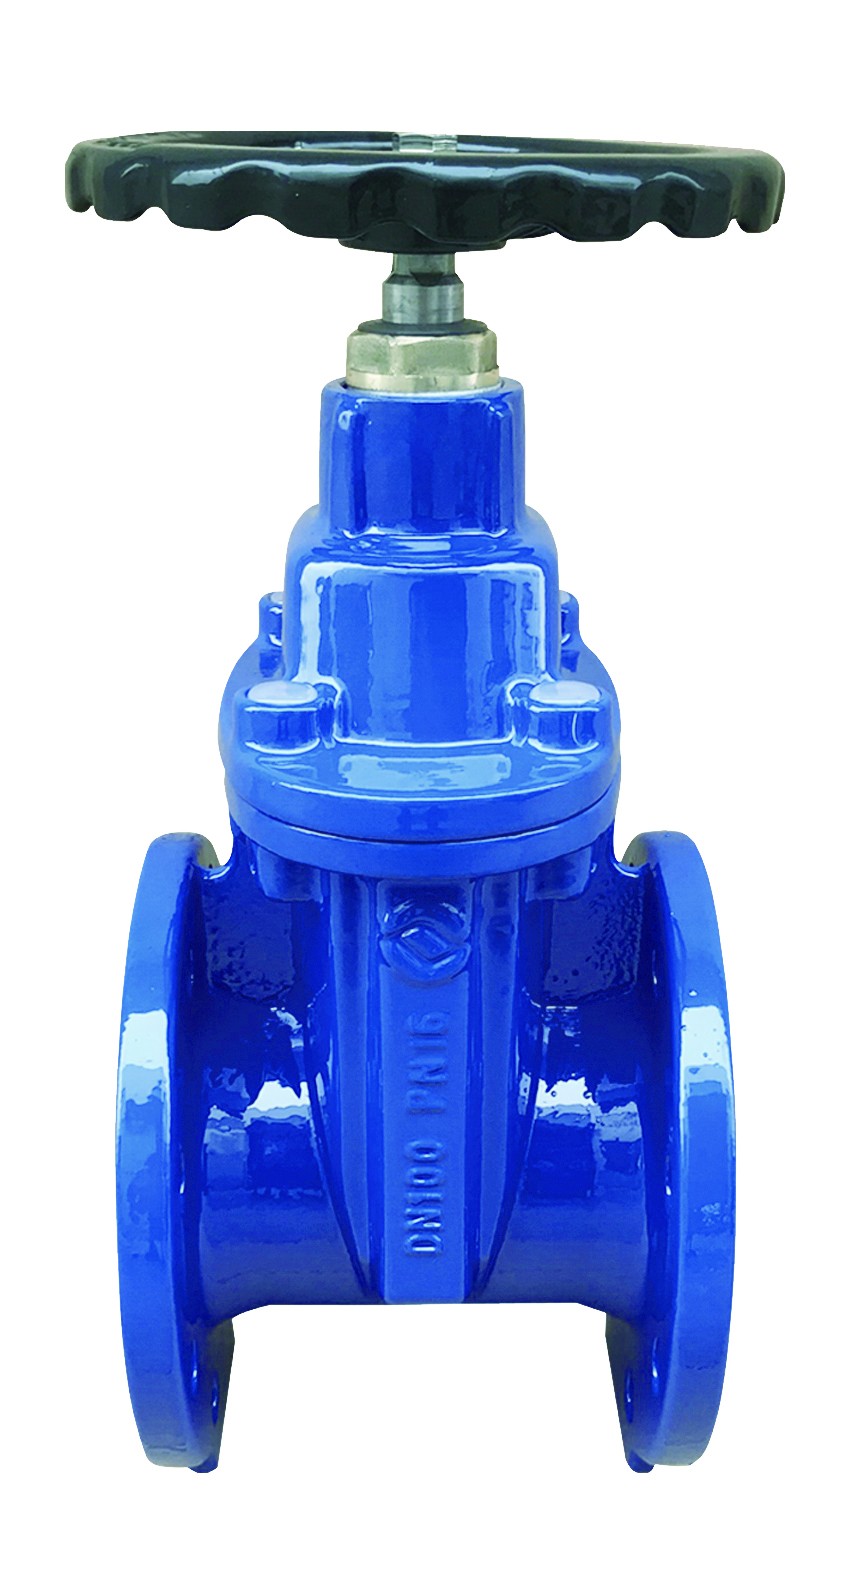 Rexroth S25A check valve